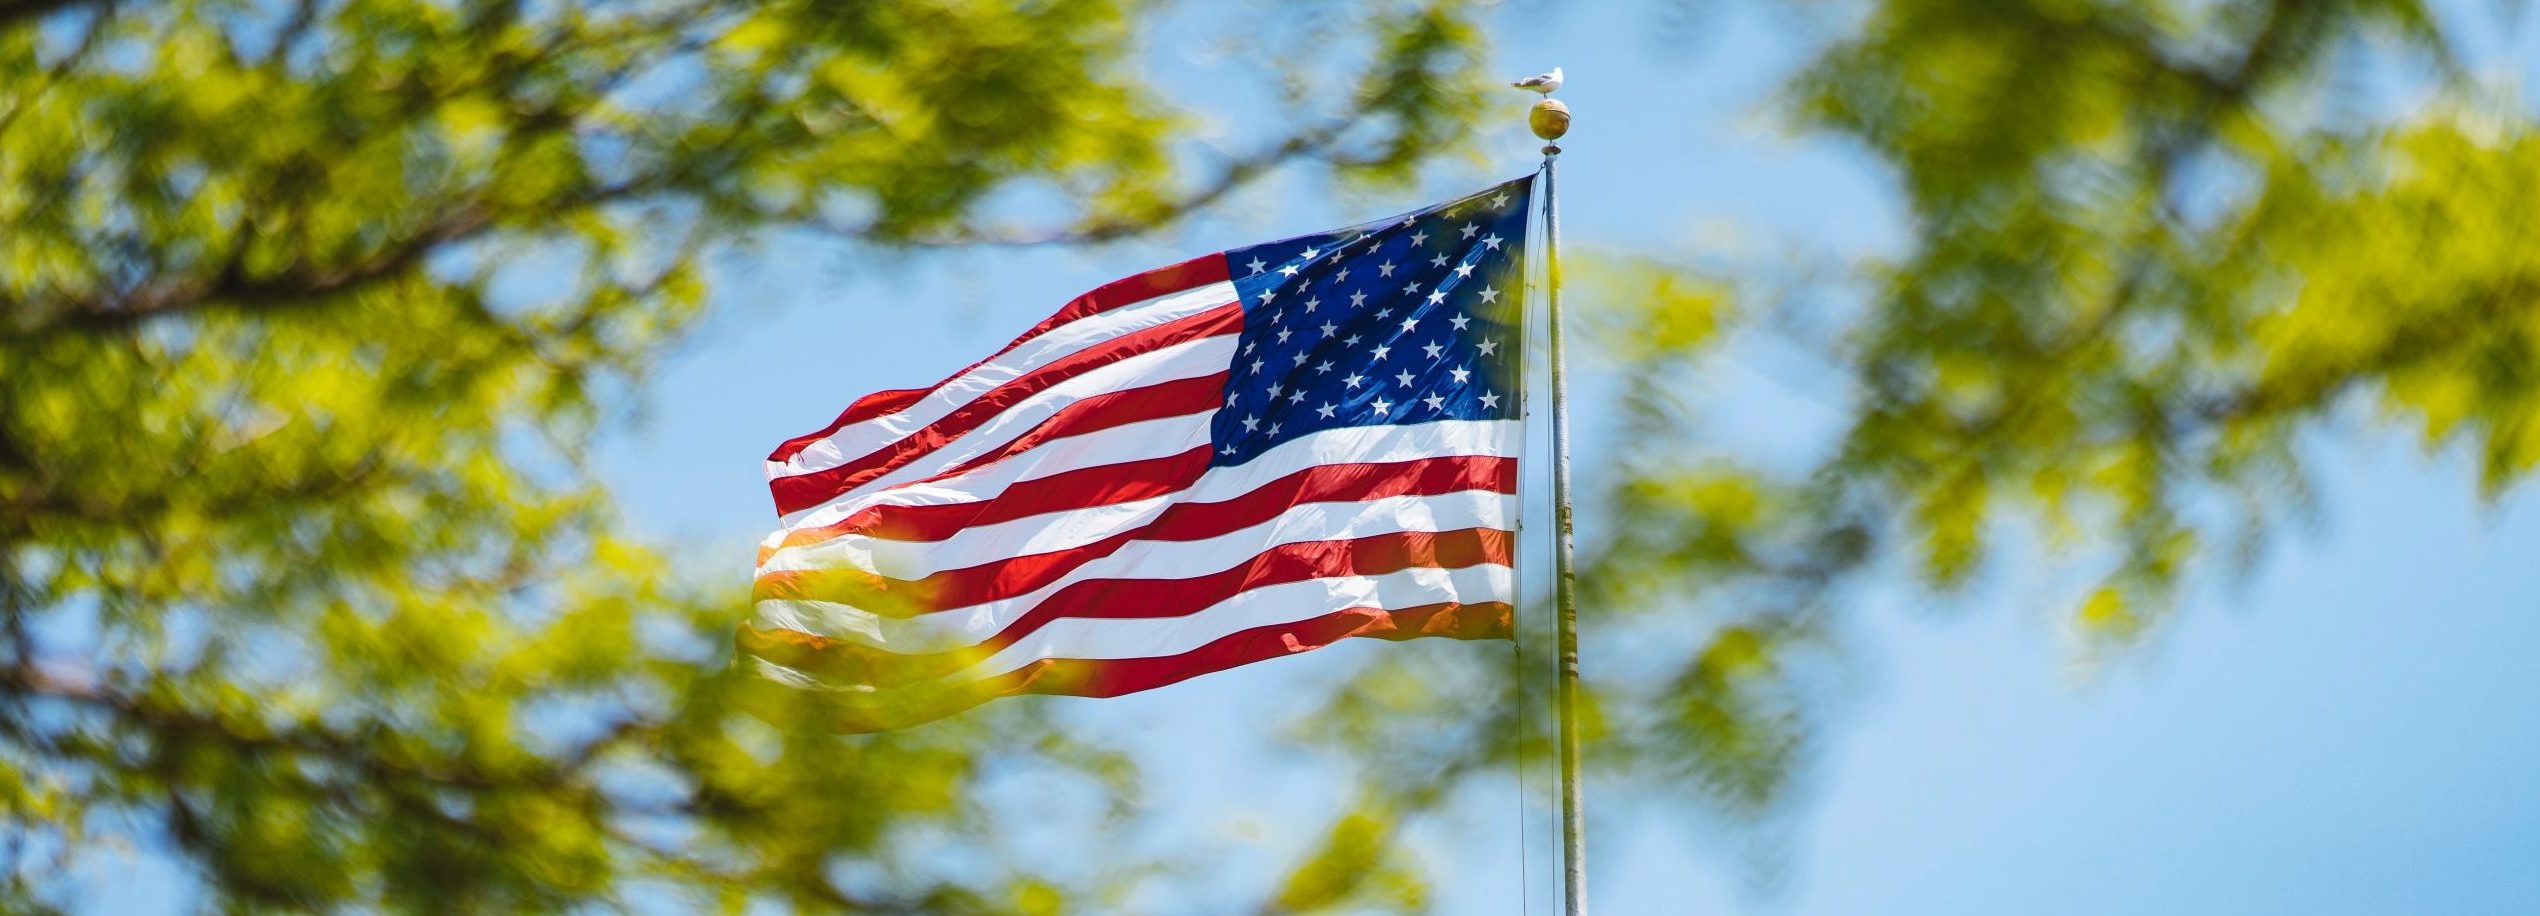 Flagge der USA weht im Wind vor grünen Bäumen